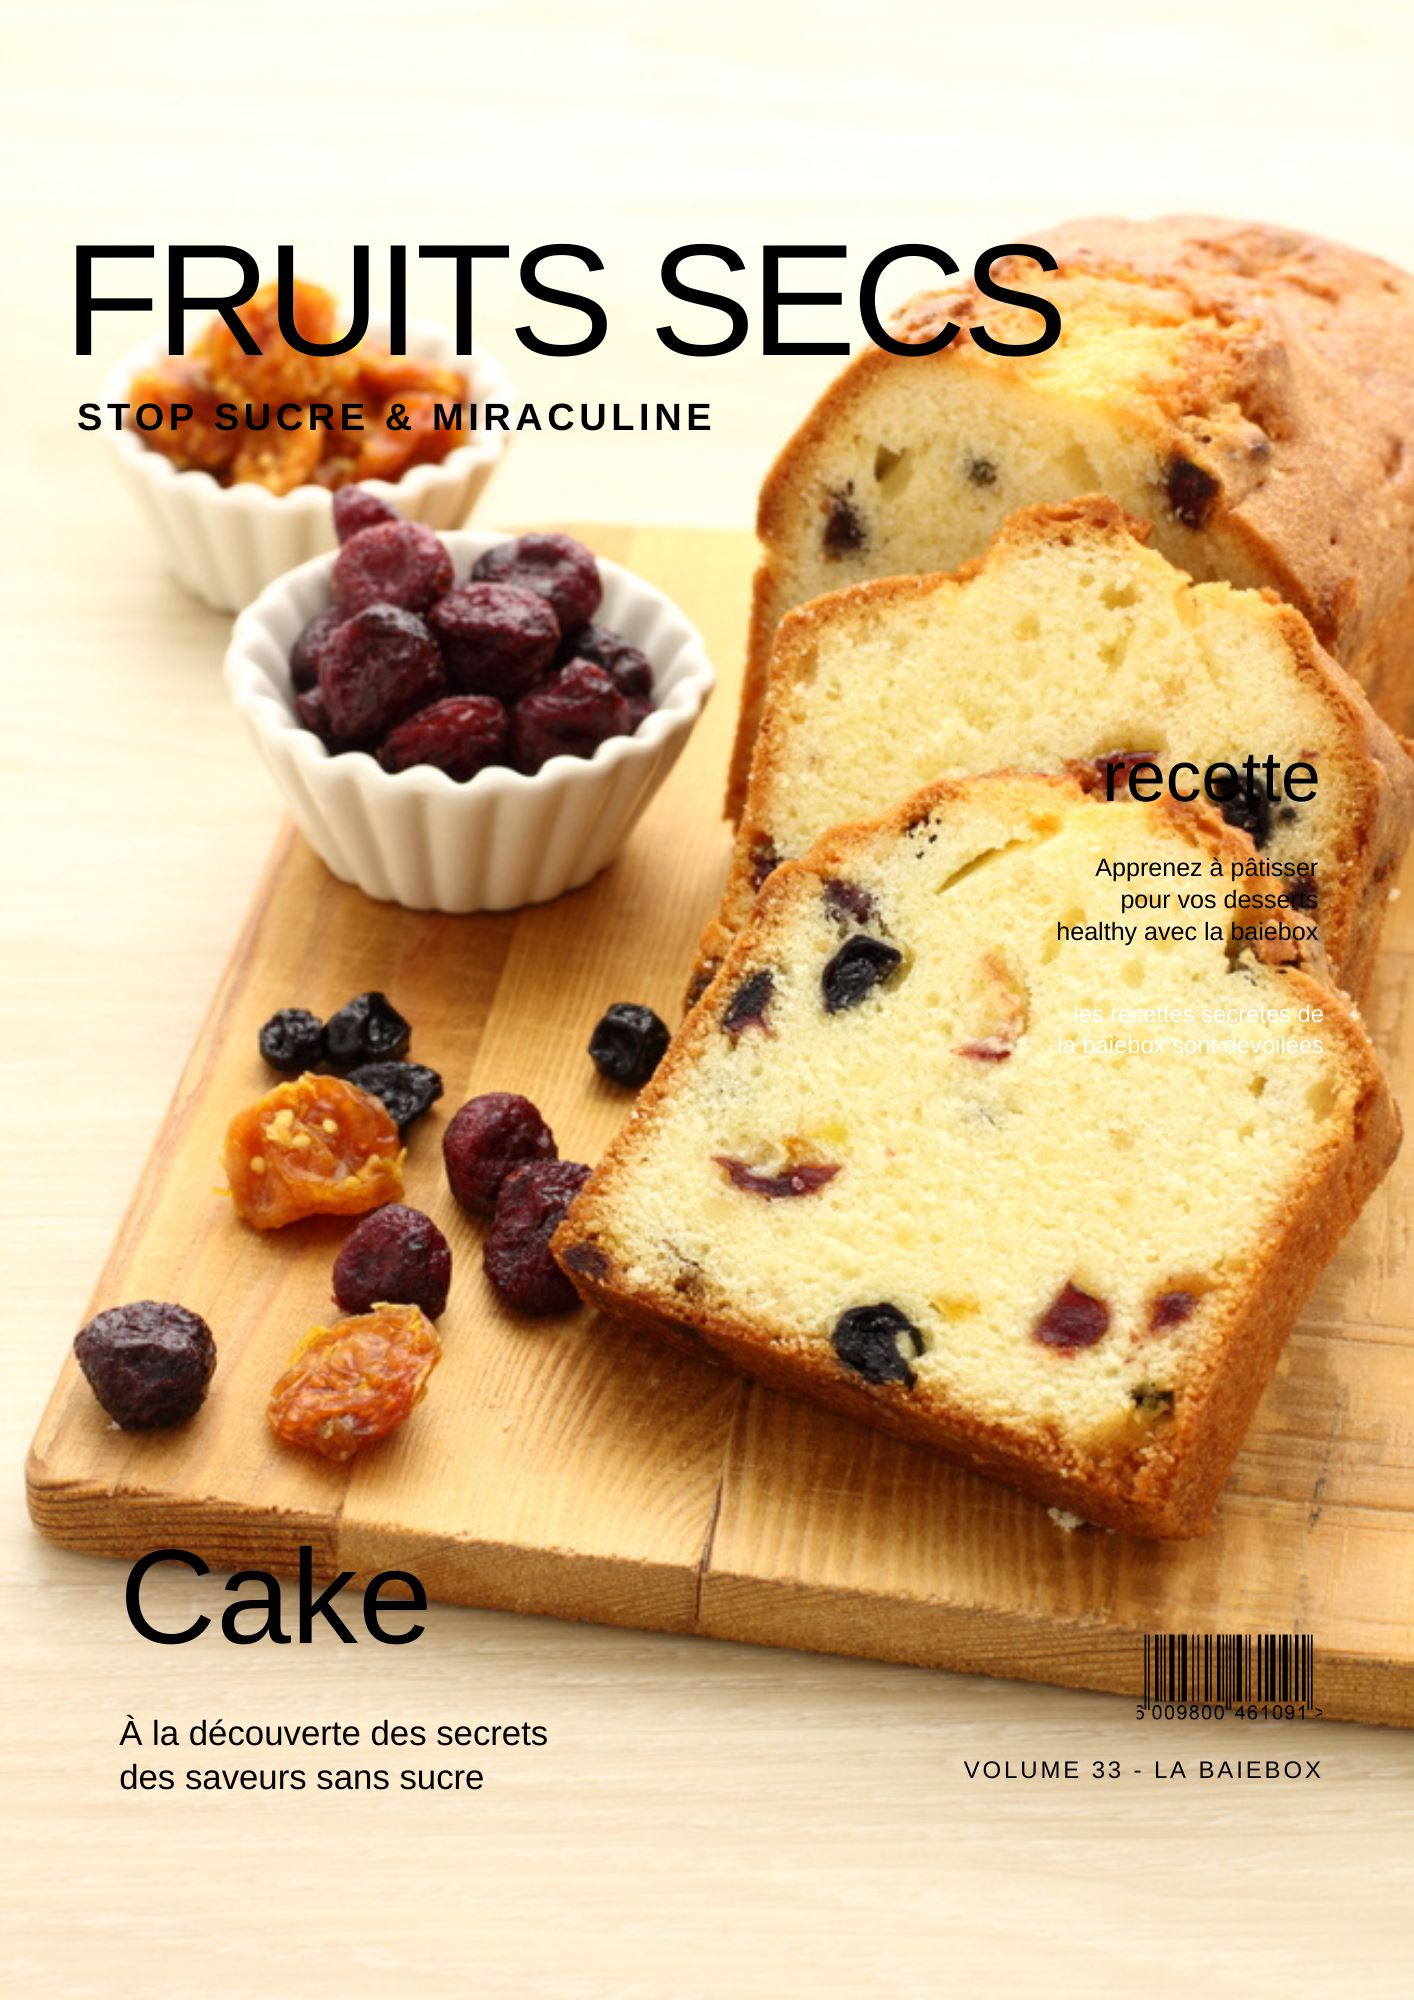 Cake fruits secs Ebook Recette sans sucre 